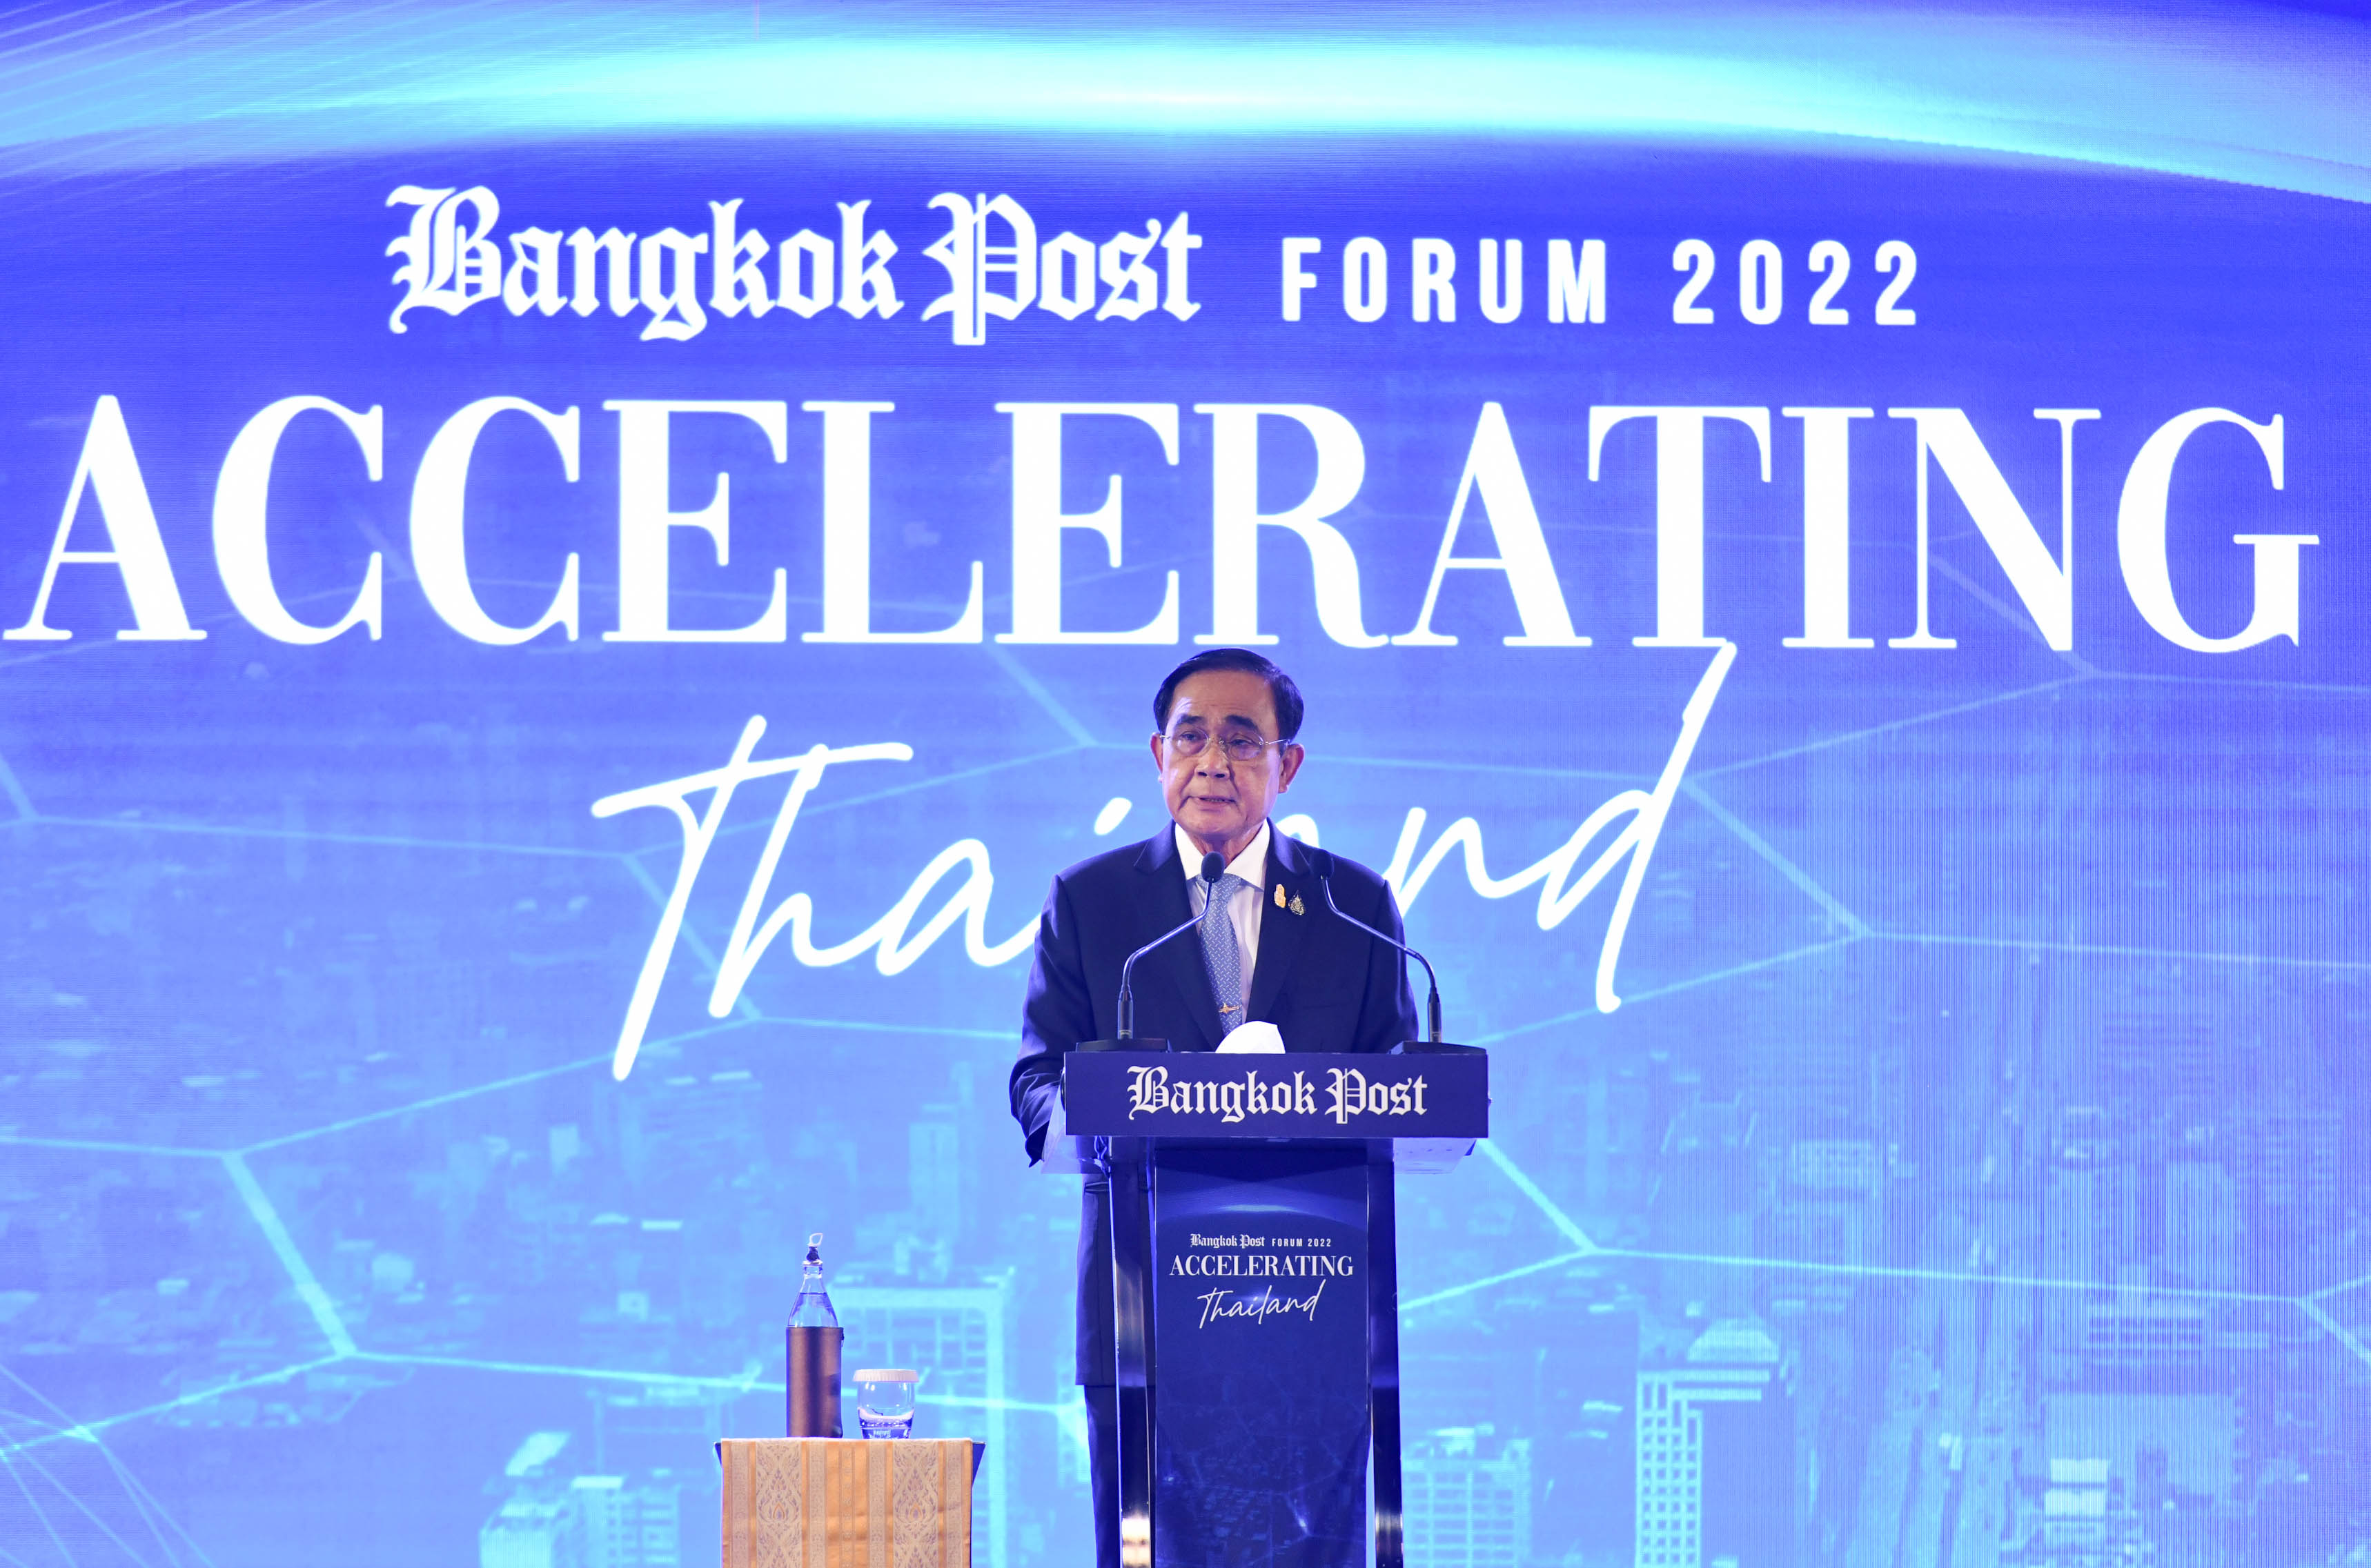 นายกฯ กล่าวปาฐกถาพิเศษในงาน “Bangkok Post Forum 2022: Accelerating Thailand” ชูกลยุทธ์ “เชื่อมไทยเดินหน้า” มุ่งสร้างอนาคตให้ประเทศไทยอย่างยั่งยืน